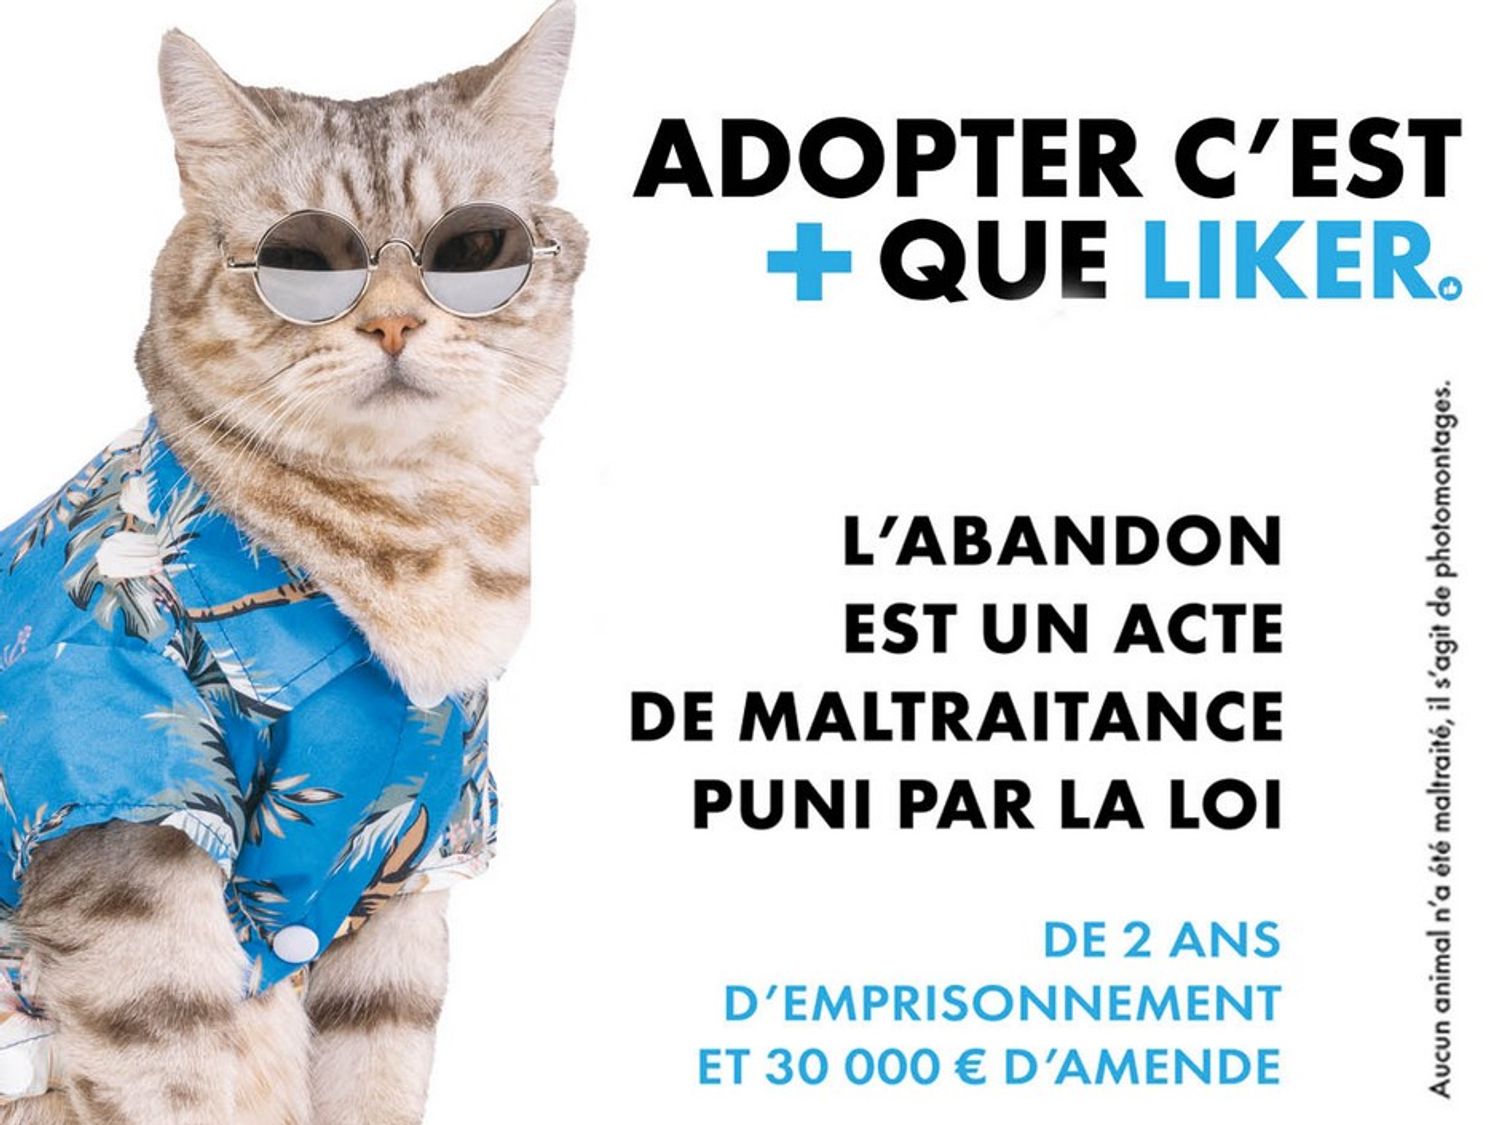 La ville de Dijon s’engage contre les abandons d’animaux domestiques